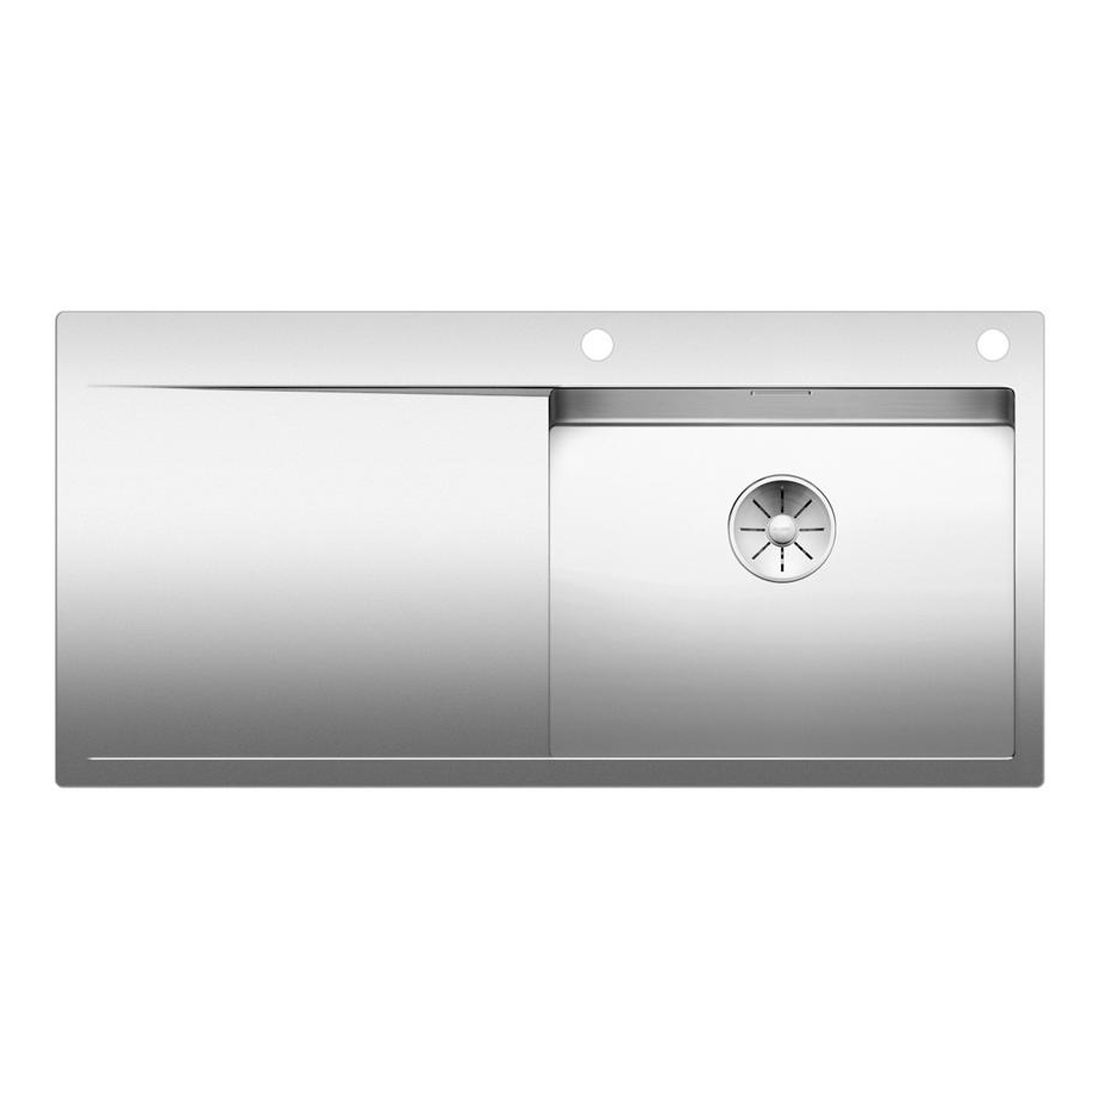 Кухонная мойка Blanco Flow XL 6S-IF полированная сталь набор аксессуаров inda indissima barra 400cns51n сталь